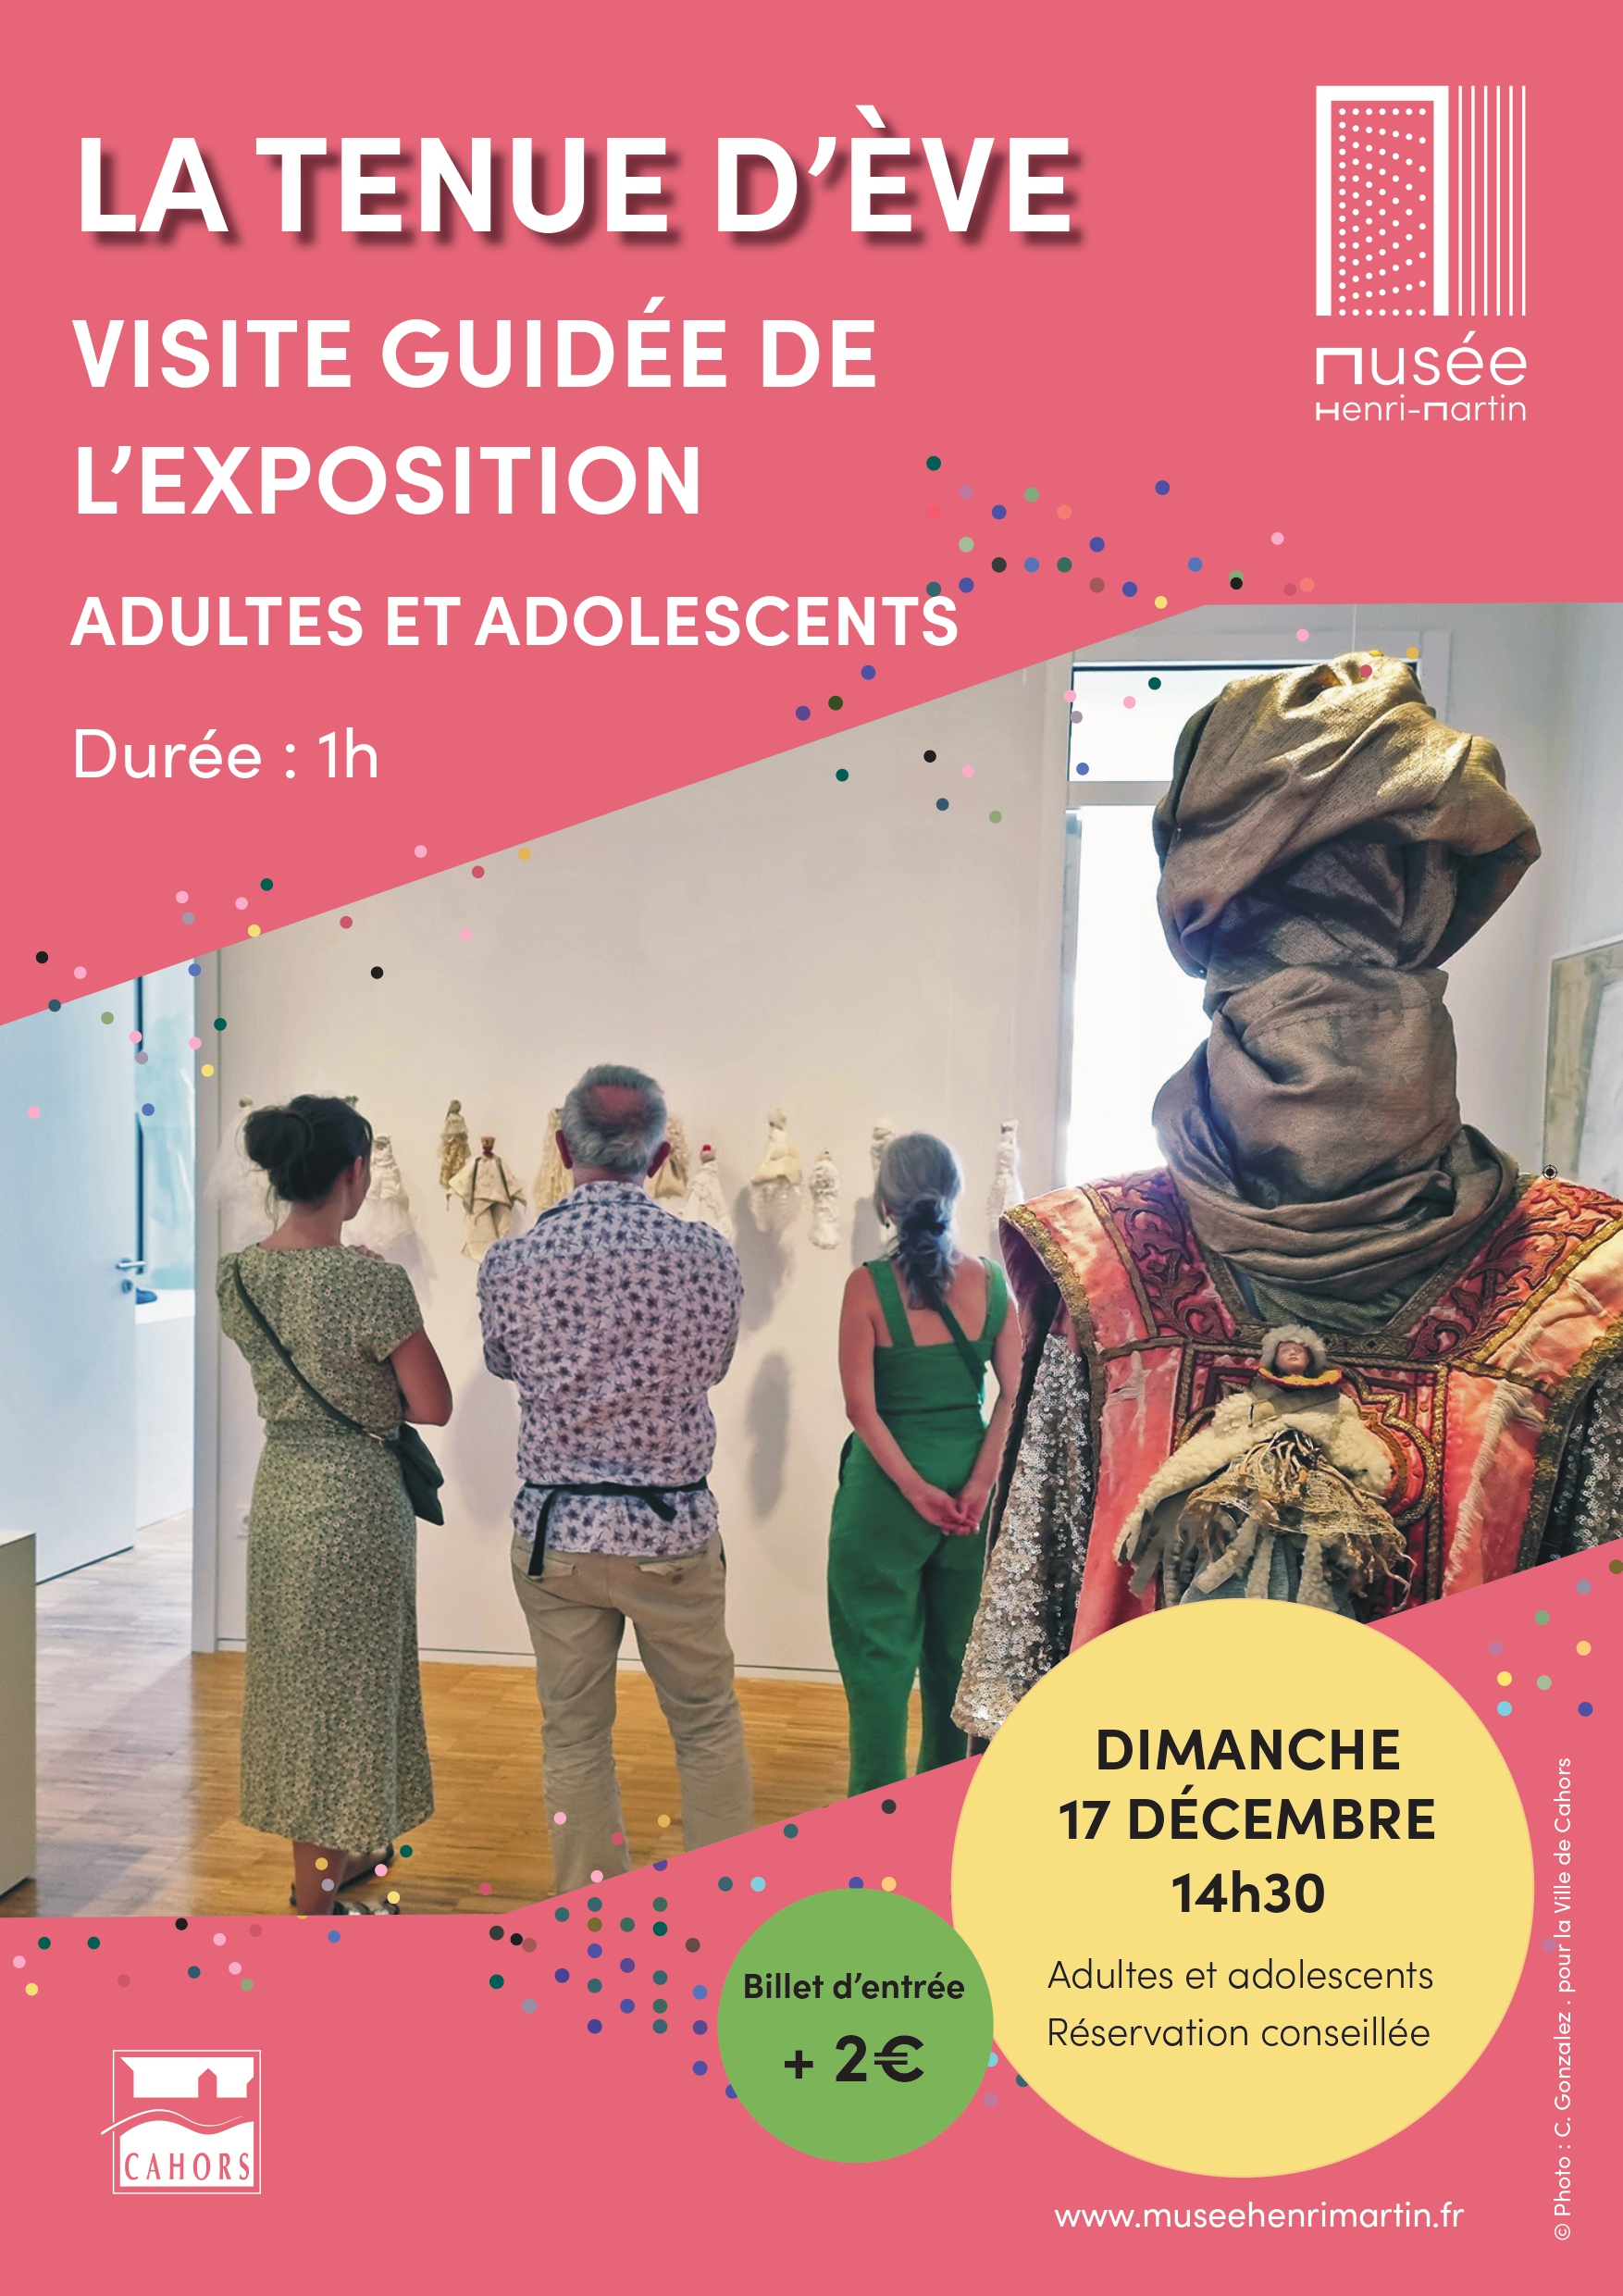 Visite guidée de l'exposition "Tenue d'Eve" au Musée Henri-Martin  France Occitanie Lot Cahors 46000